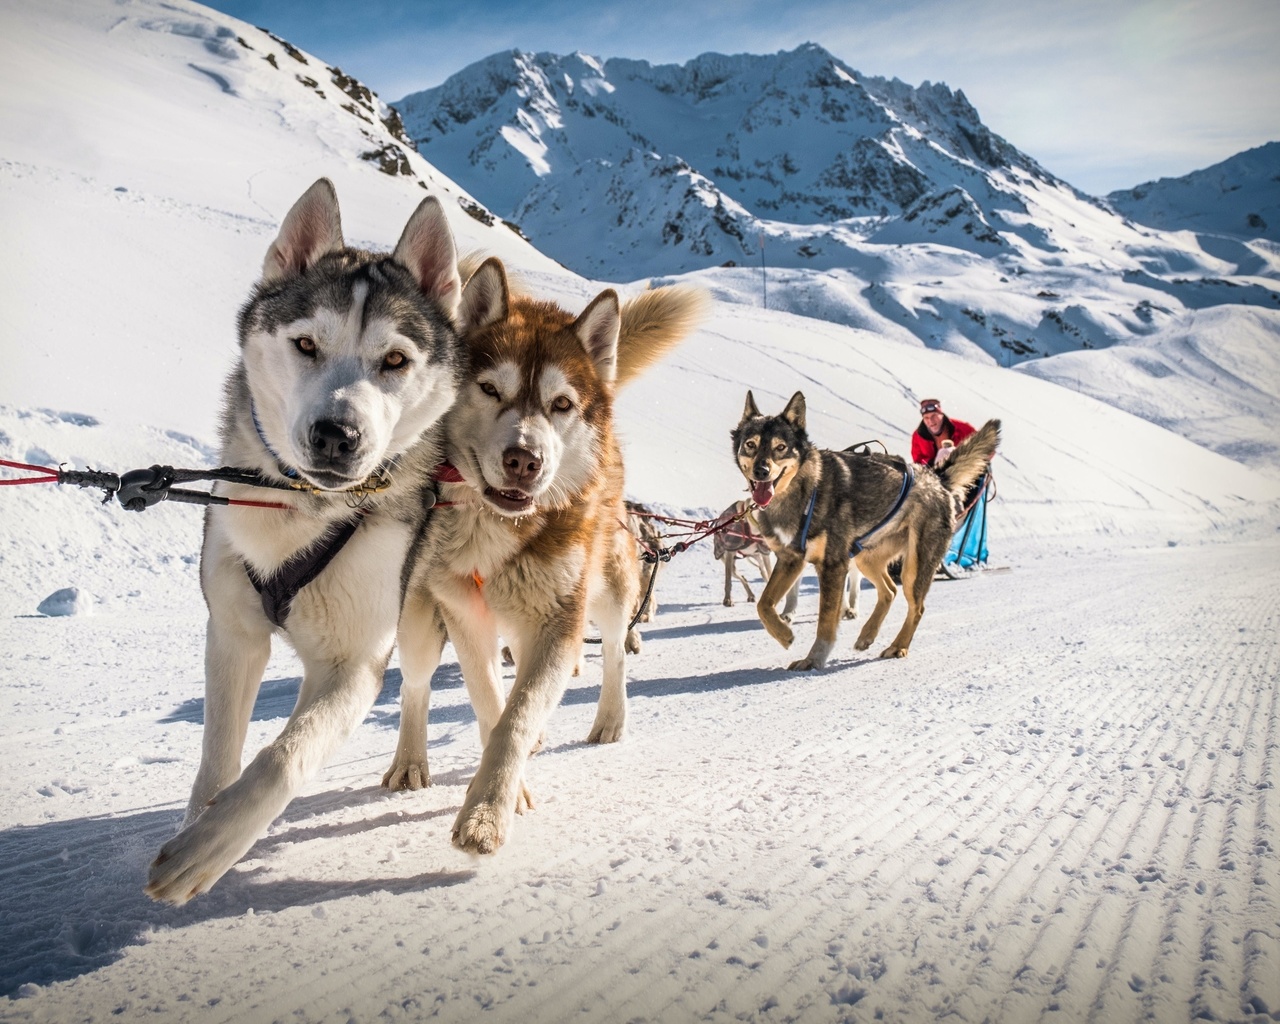 sled dogs, val thorens, france, alps, ski resort